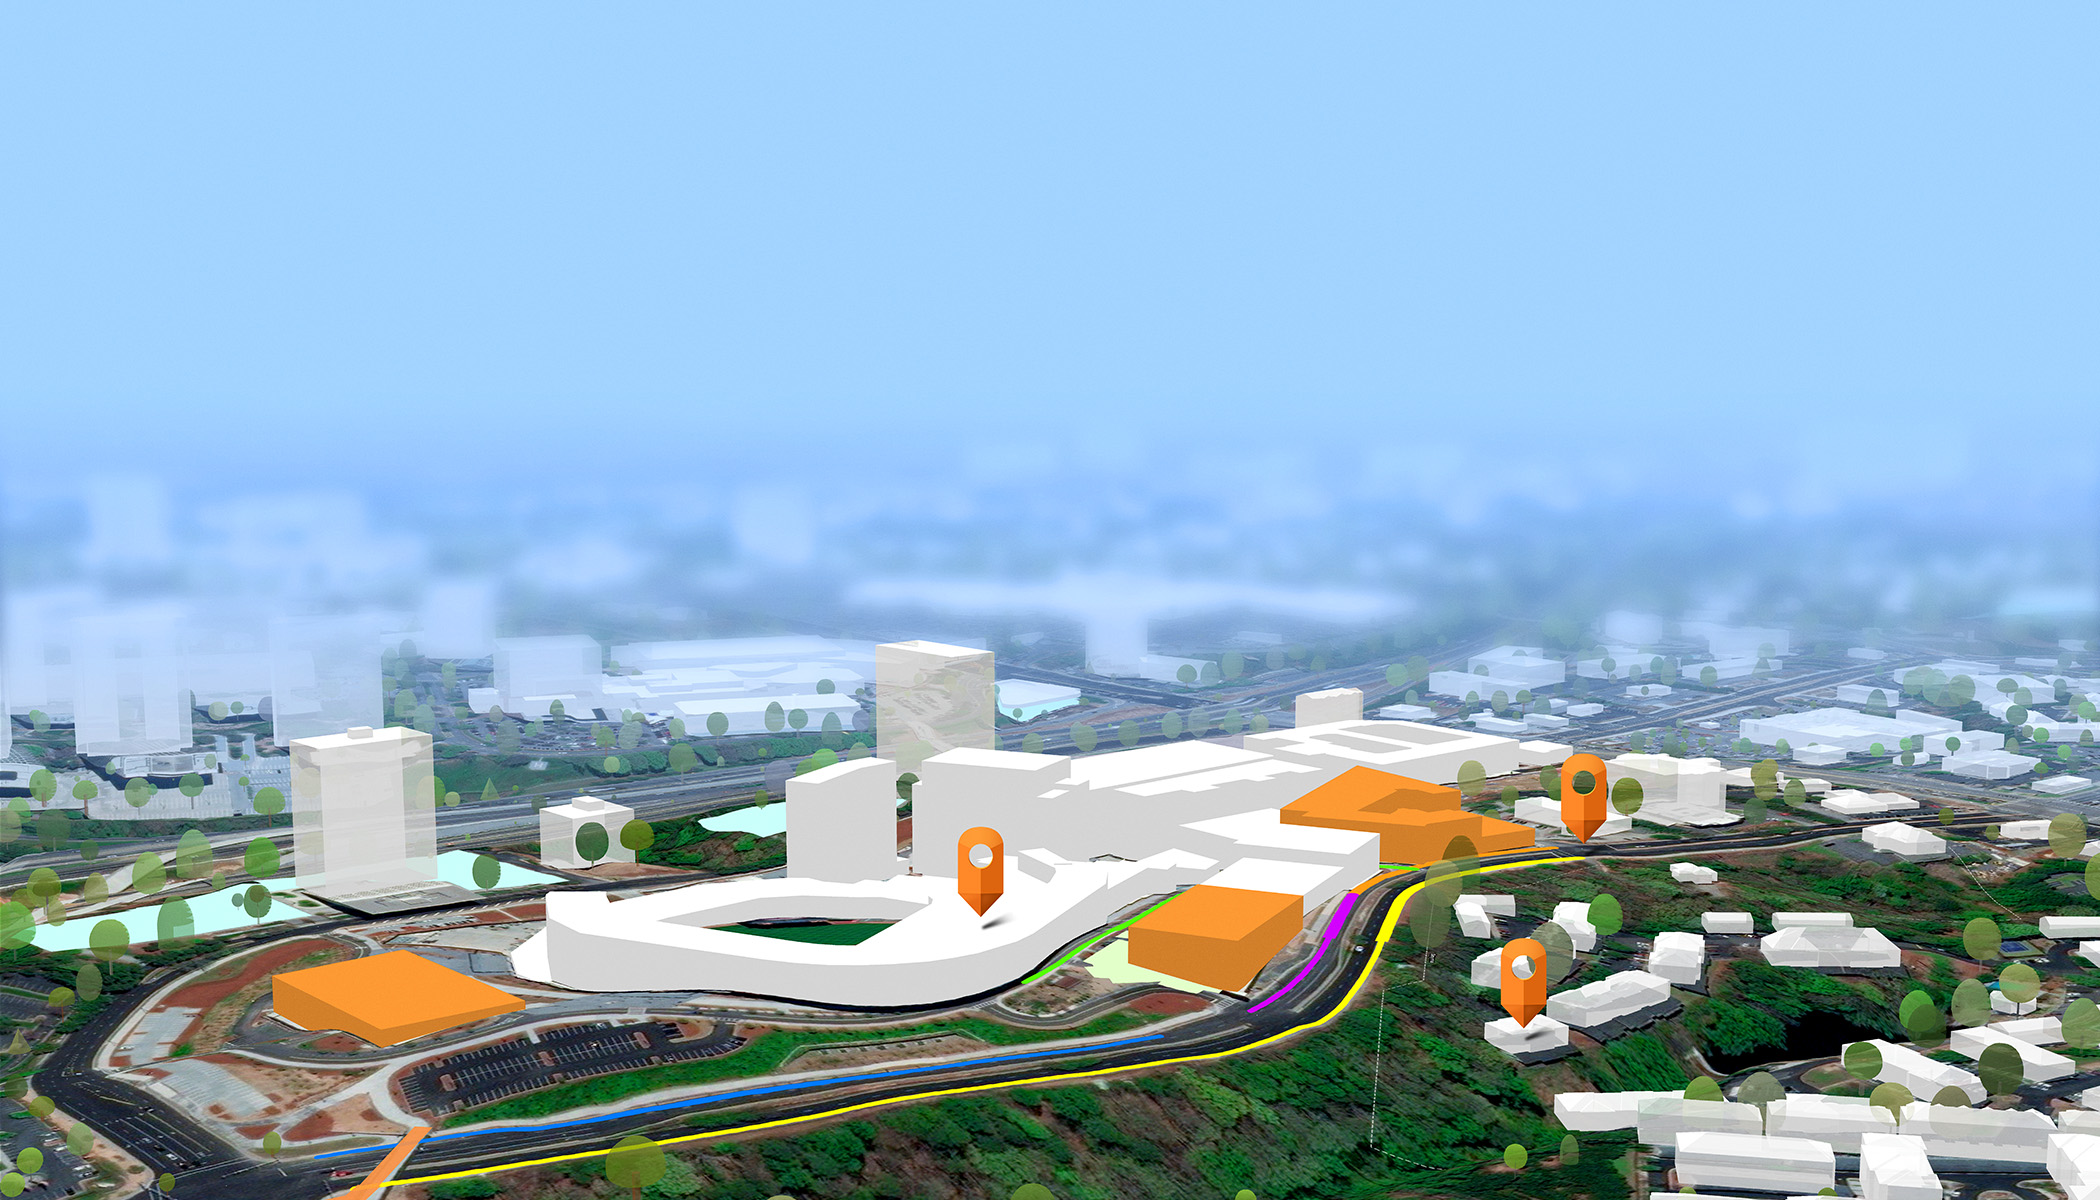 تصميم ثلاثي الأبعاد لمدينة ذو خلفية غير واضحة وتعرض المقدمة مباني بيضاء وبرتقالية وثلاثة أيقات تثبيت برتقالية للتنقل